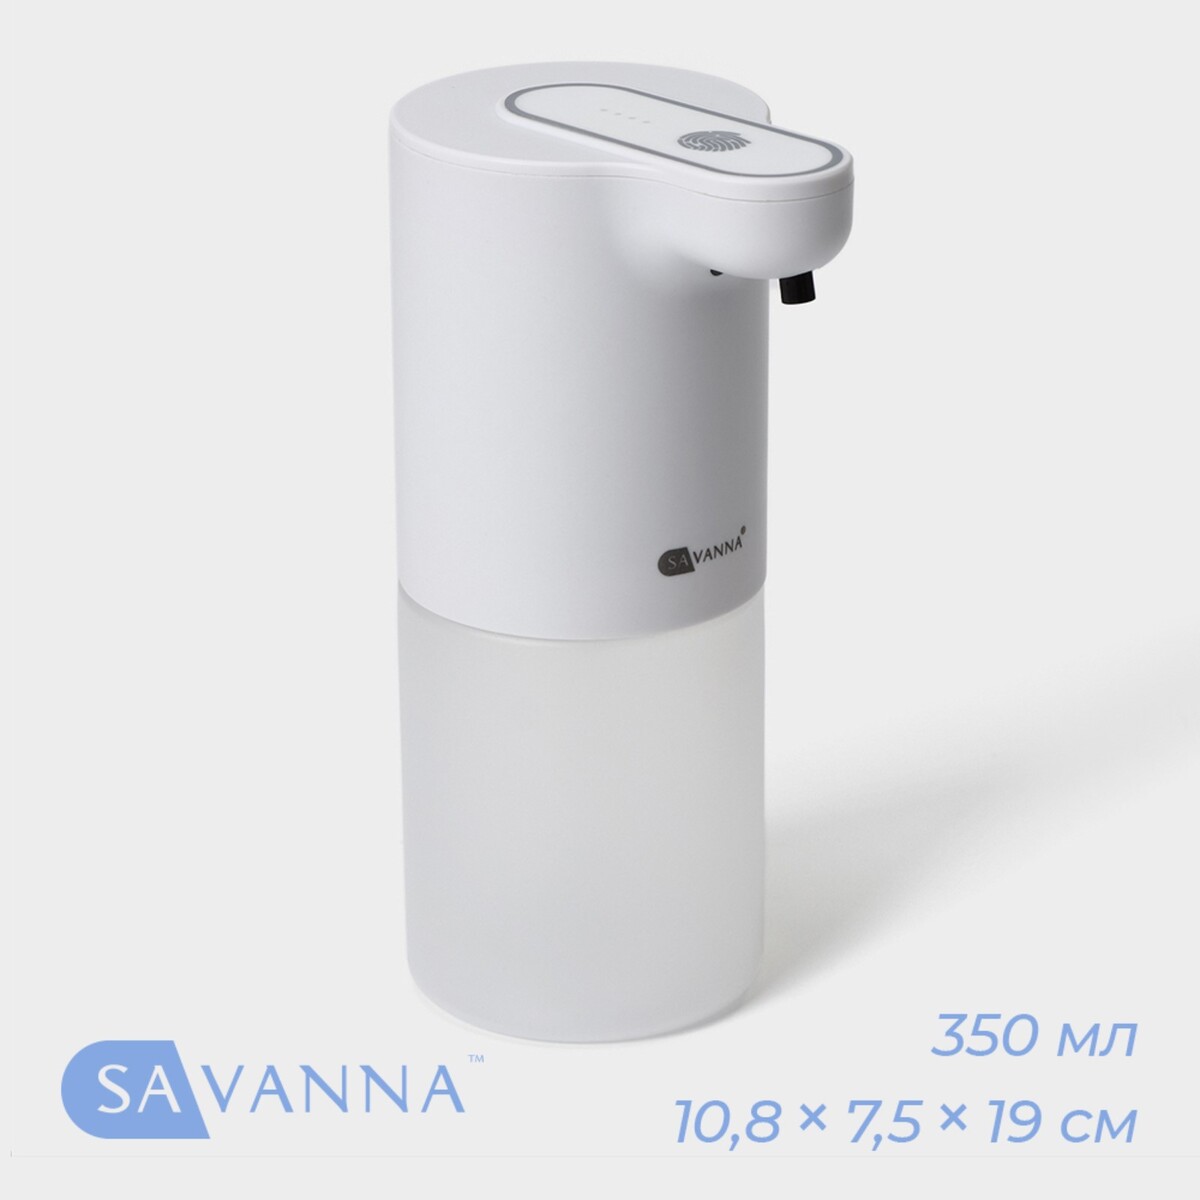 Диспенсер сенсорный для жидкого мыла savanna, 350 мл, пластик, цвет белый набор для кухни дозатор для мыла бутылка для моющего средства стакан подставка пластик 4 шт белый t2022 ht069